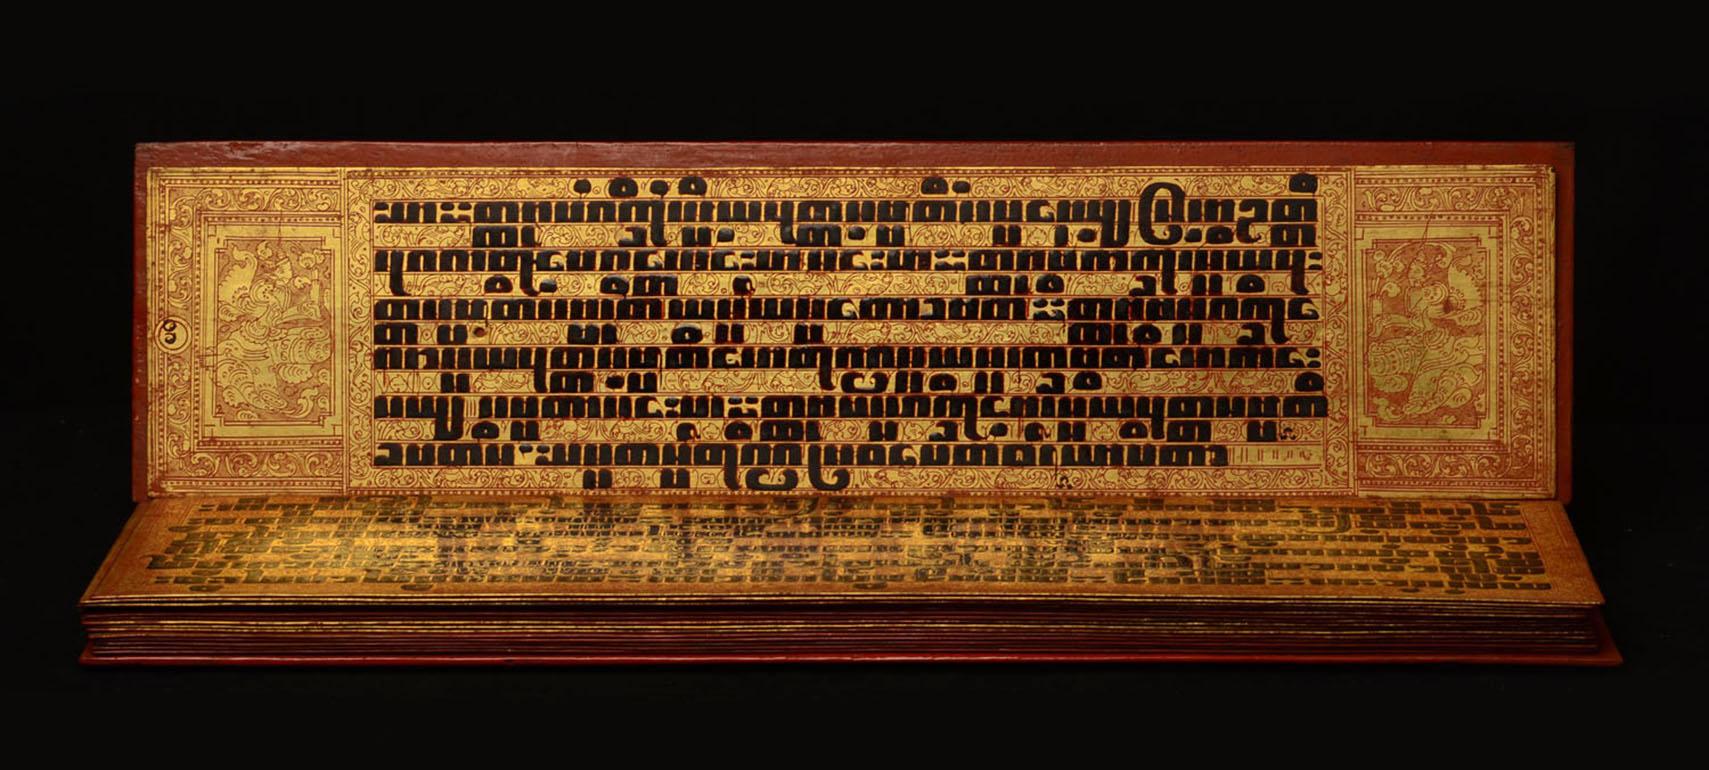 Rare ensemble complet de manuscrits birmans (KAMMAVACA) en tissu épais recouvert d'or et de laque en bon état. Il a été rédigé en langue pali et en écriture birmane. Les lettres carrées sont écrites dans une laque de cinabre épaisse et noire. Cet